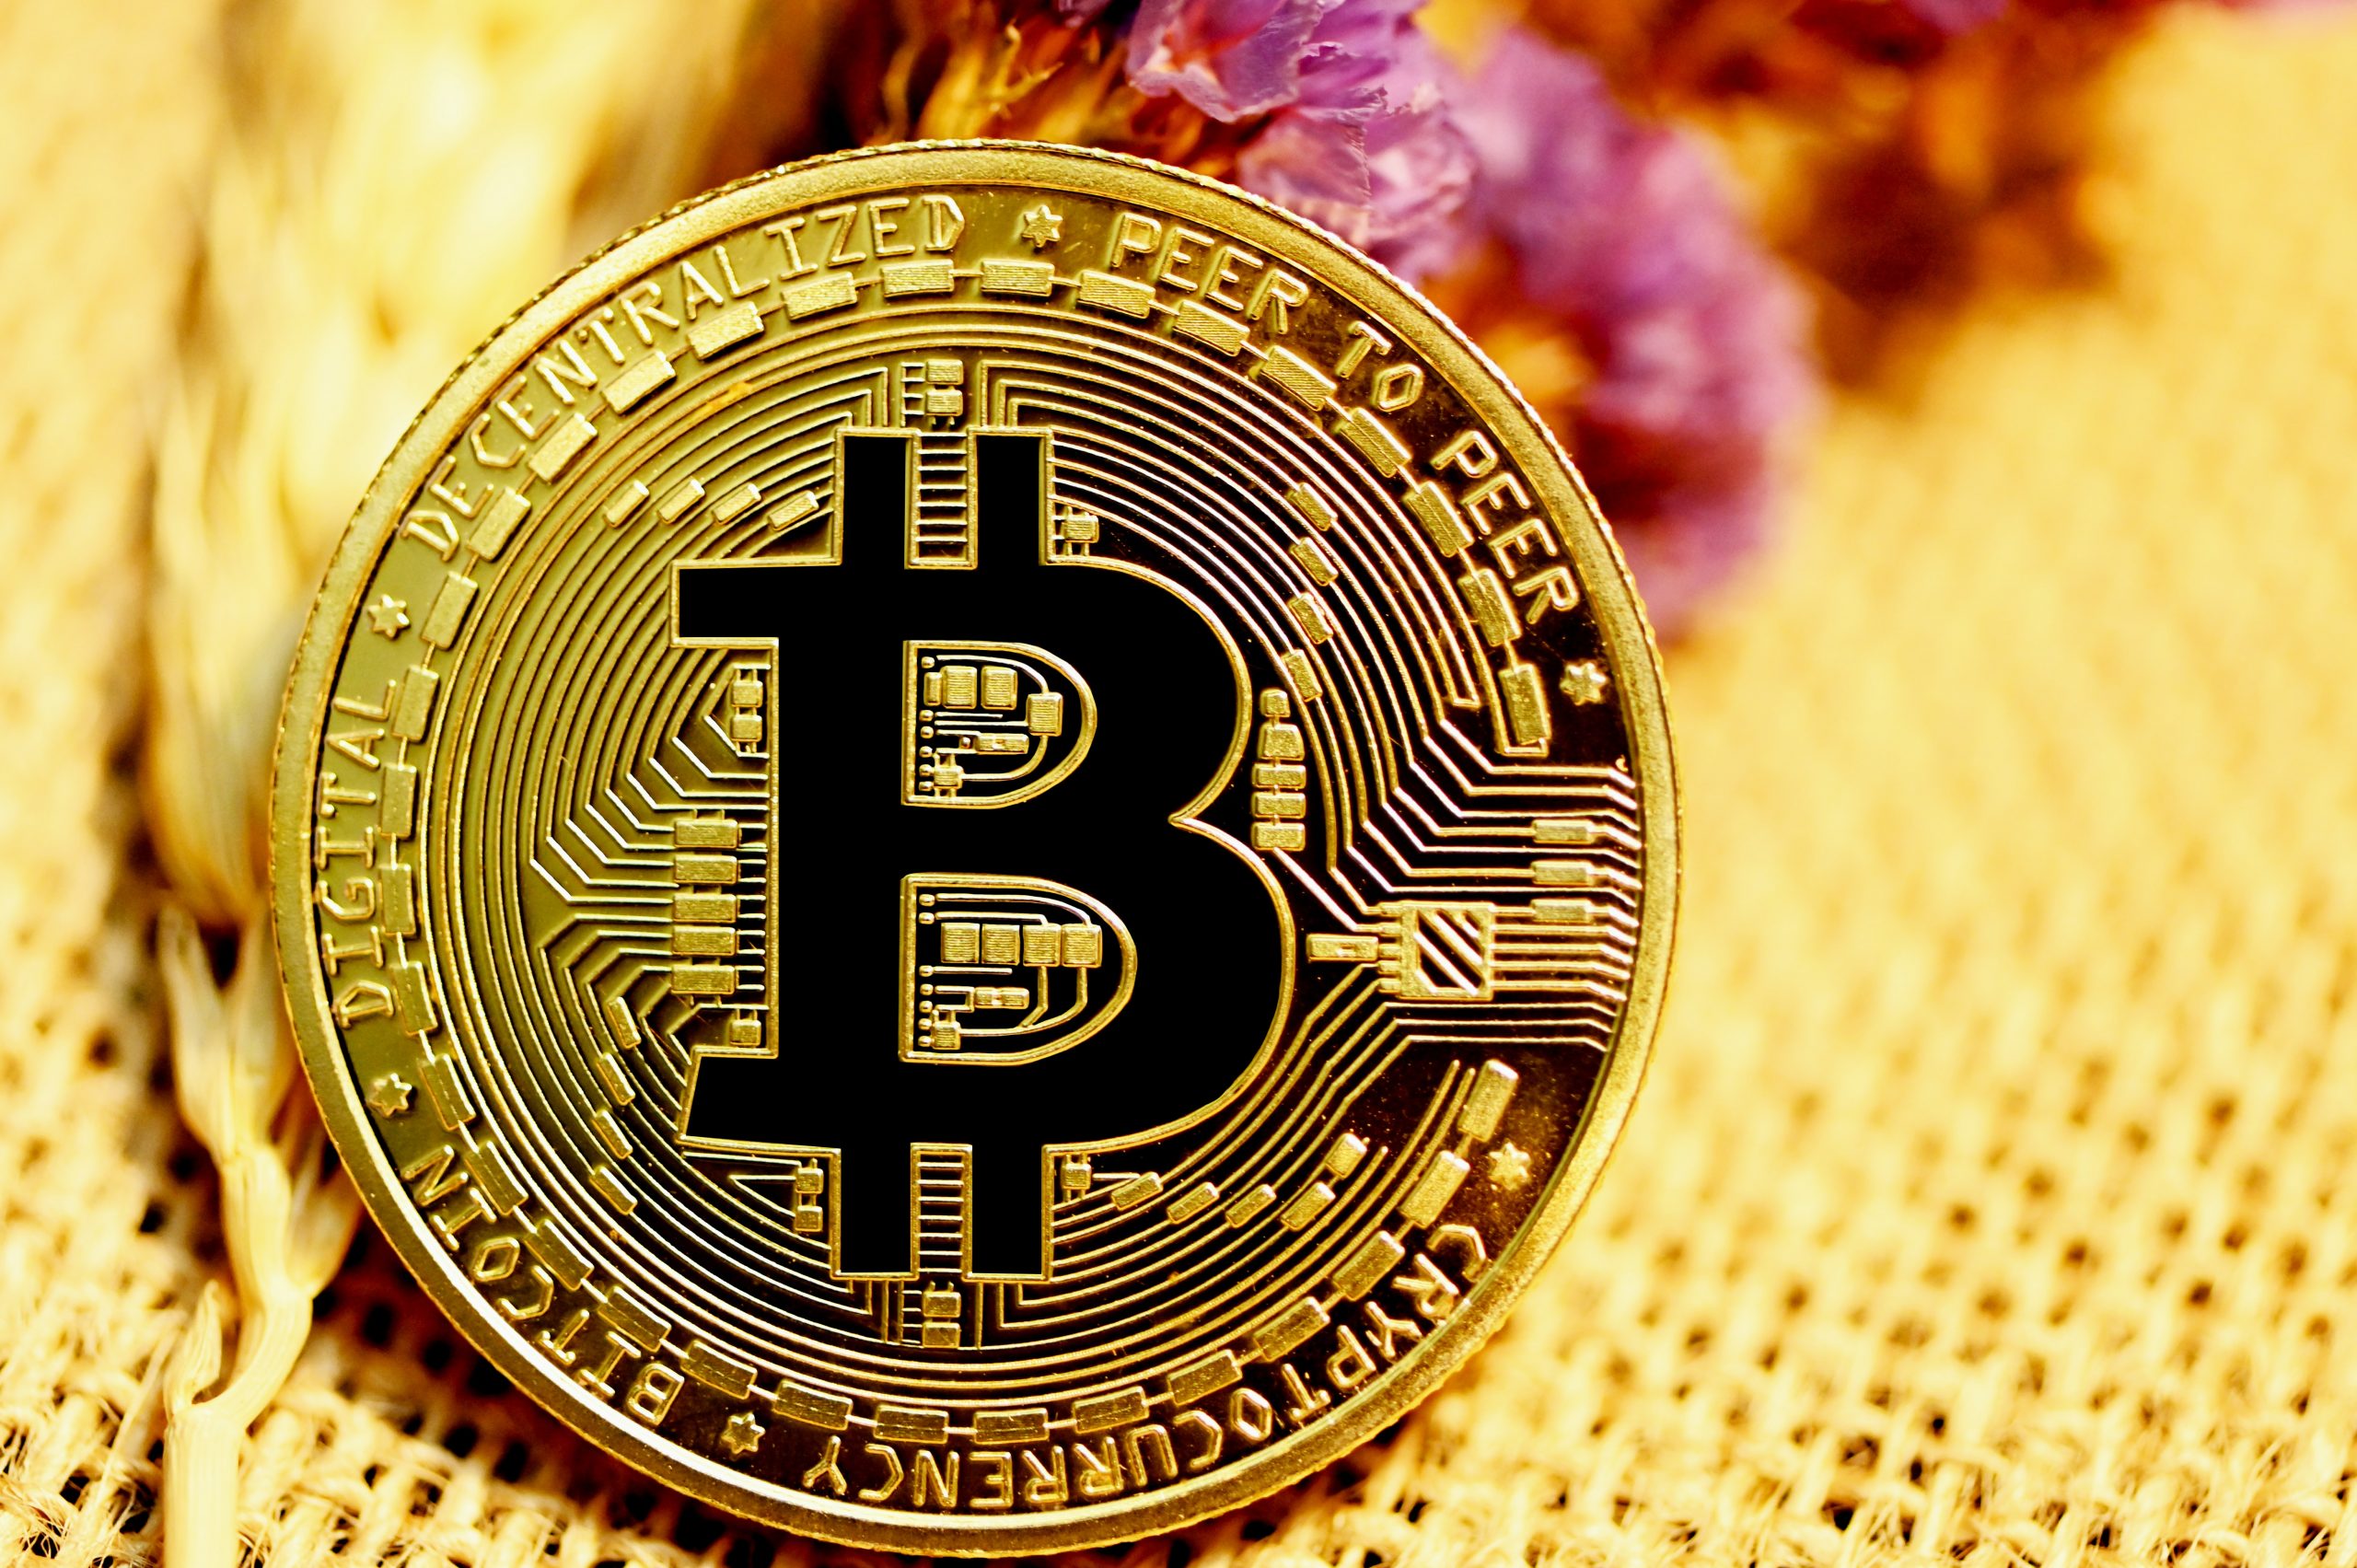 Photograph of Bitcoin token